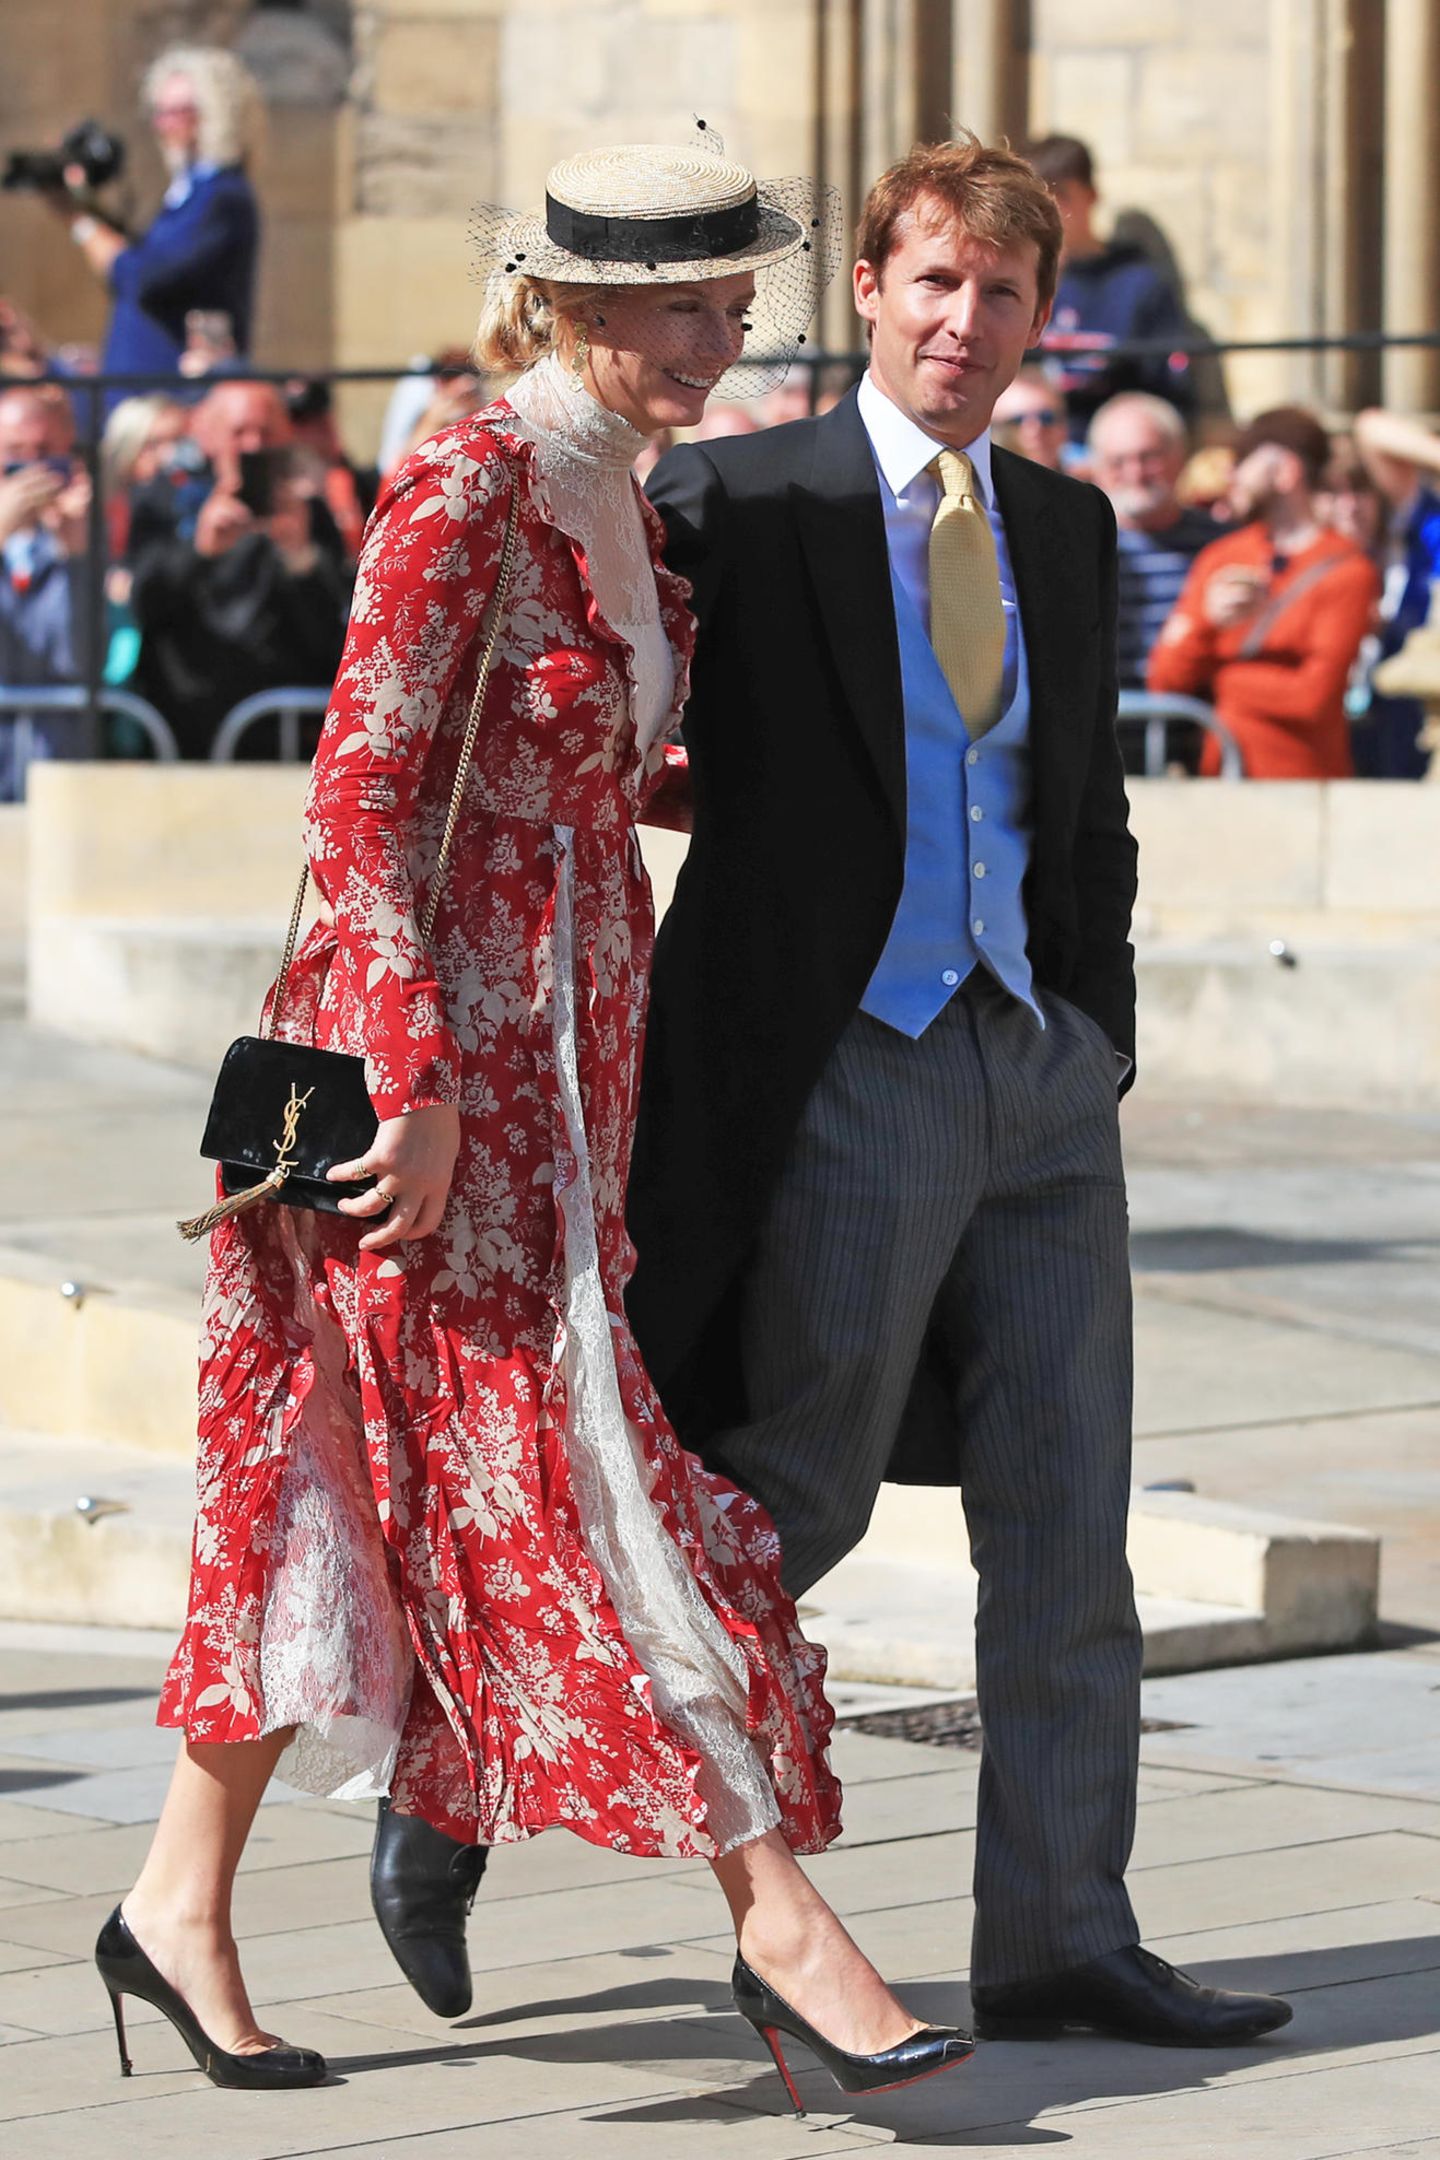 Der britische Sänger James Blunt erscheint gemeinsam mit seiner Ehefrau Sofia Wellesley. Diese trägt ein rotes Blumenkleid und kombiniert es - wie die Etikette es verlangt - mit einem Hut.